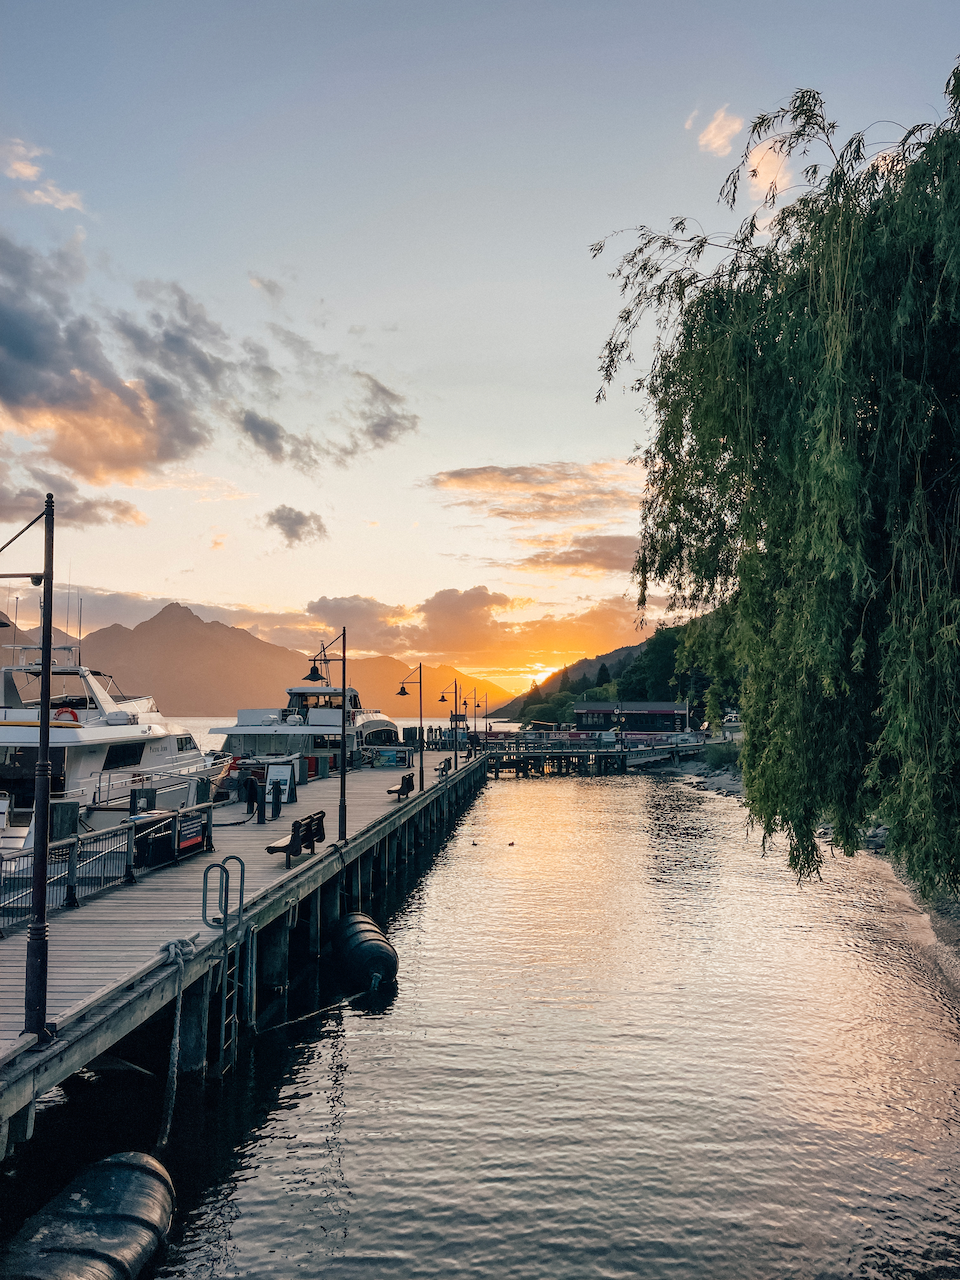 Les bateaux amarrés à quai au coucher du soleil - Queenstown - Nouvelle-Zélande